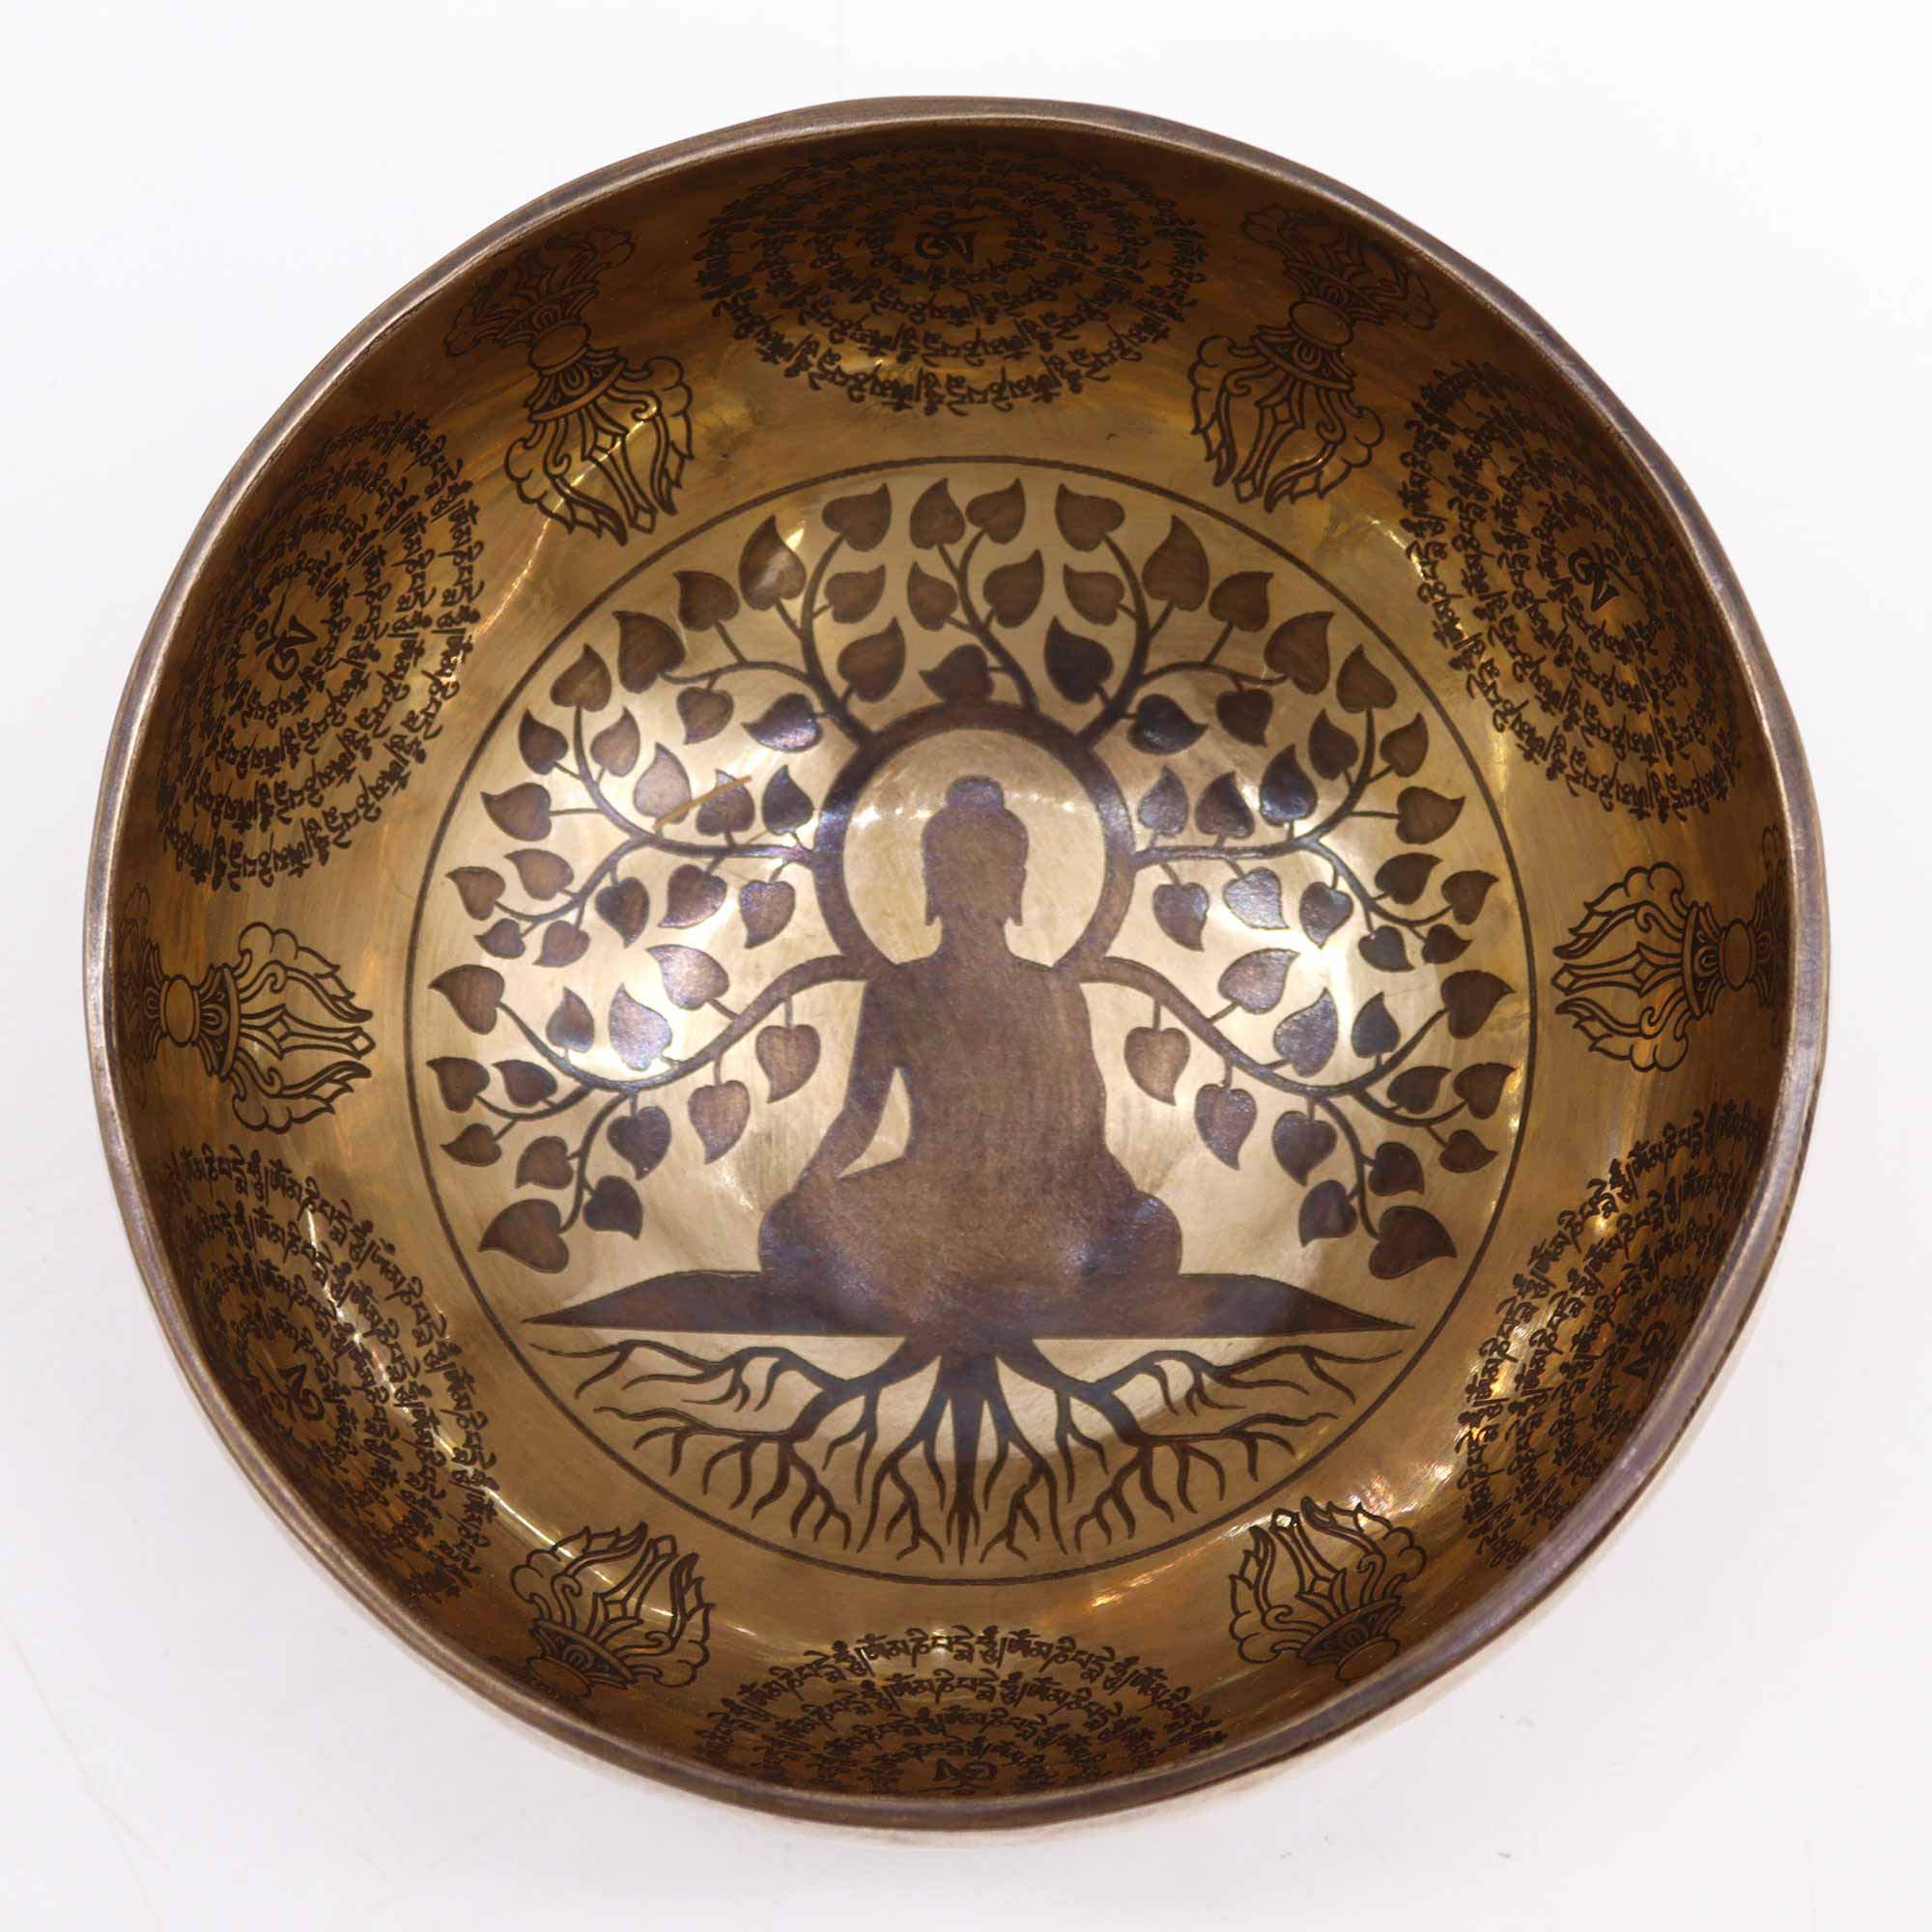 Tibetan Healing Engraved Bowl - 6.3